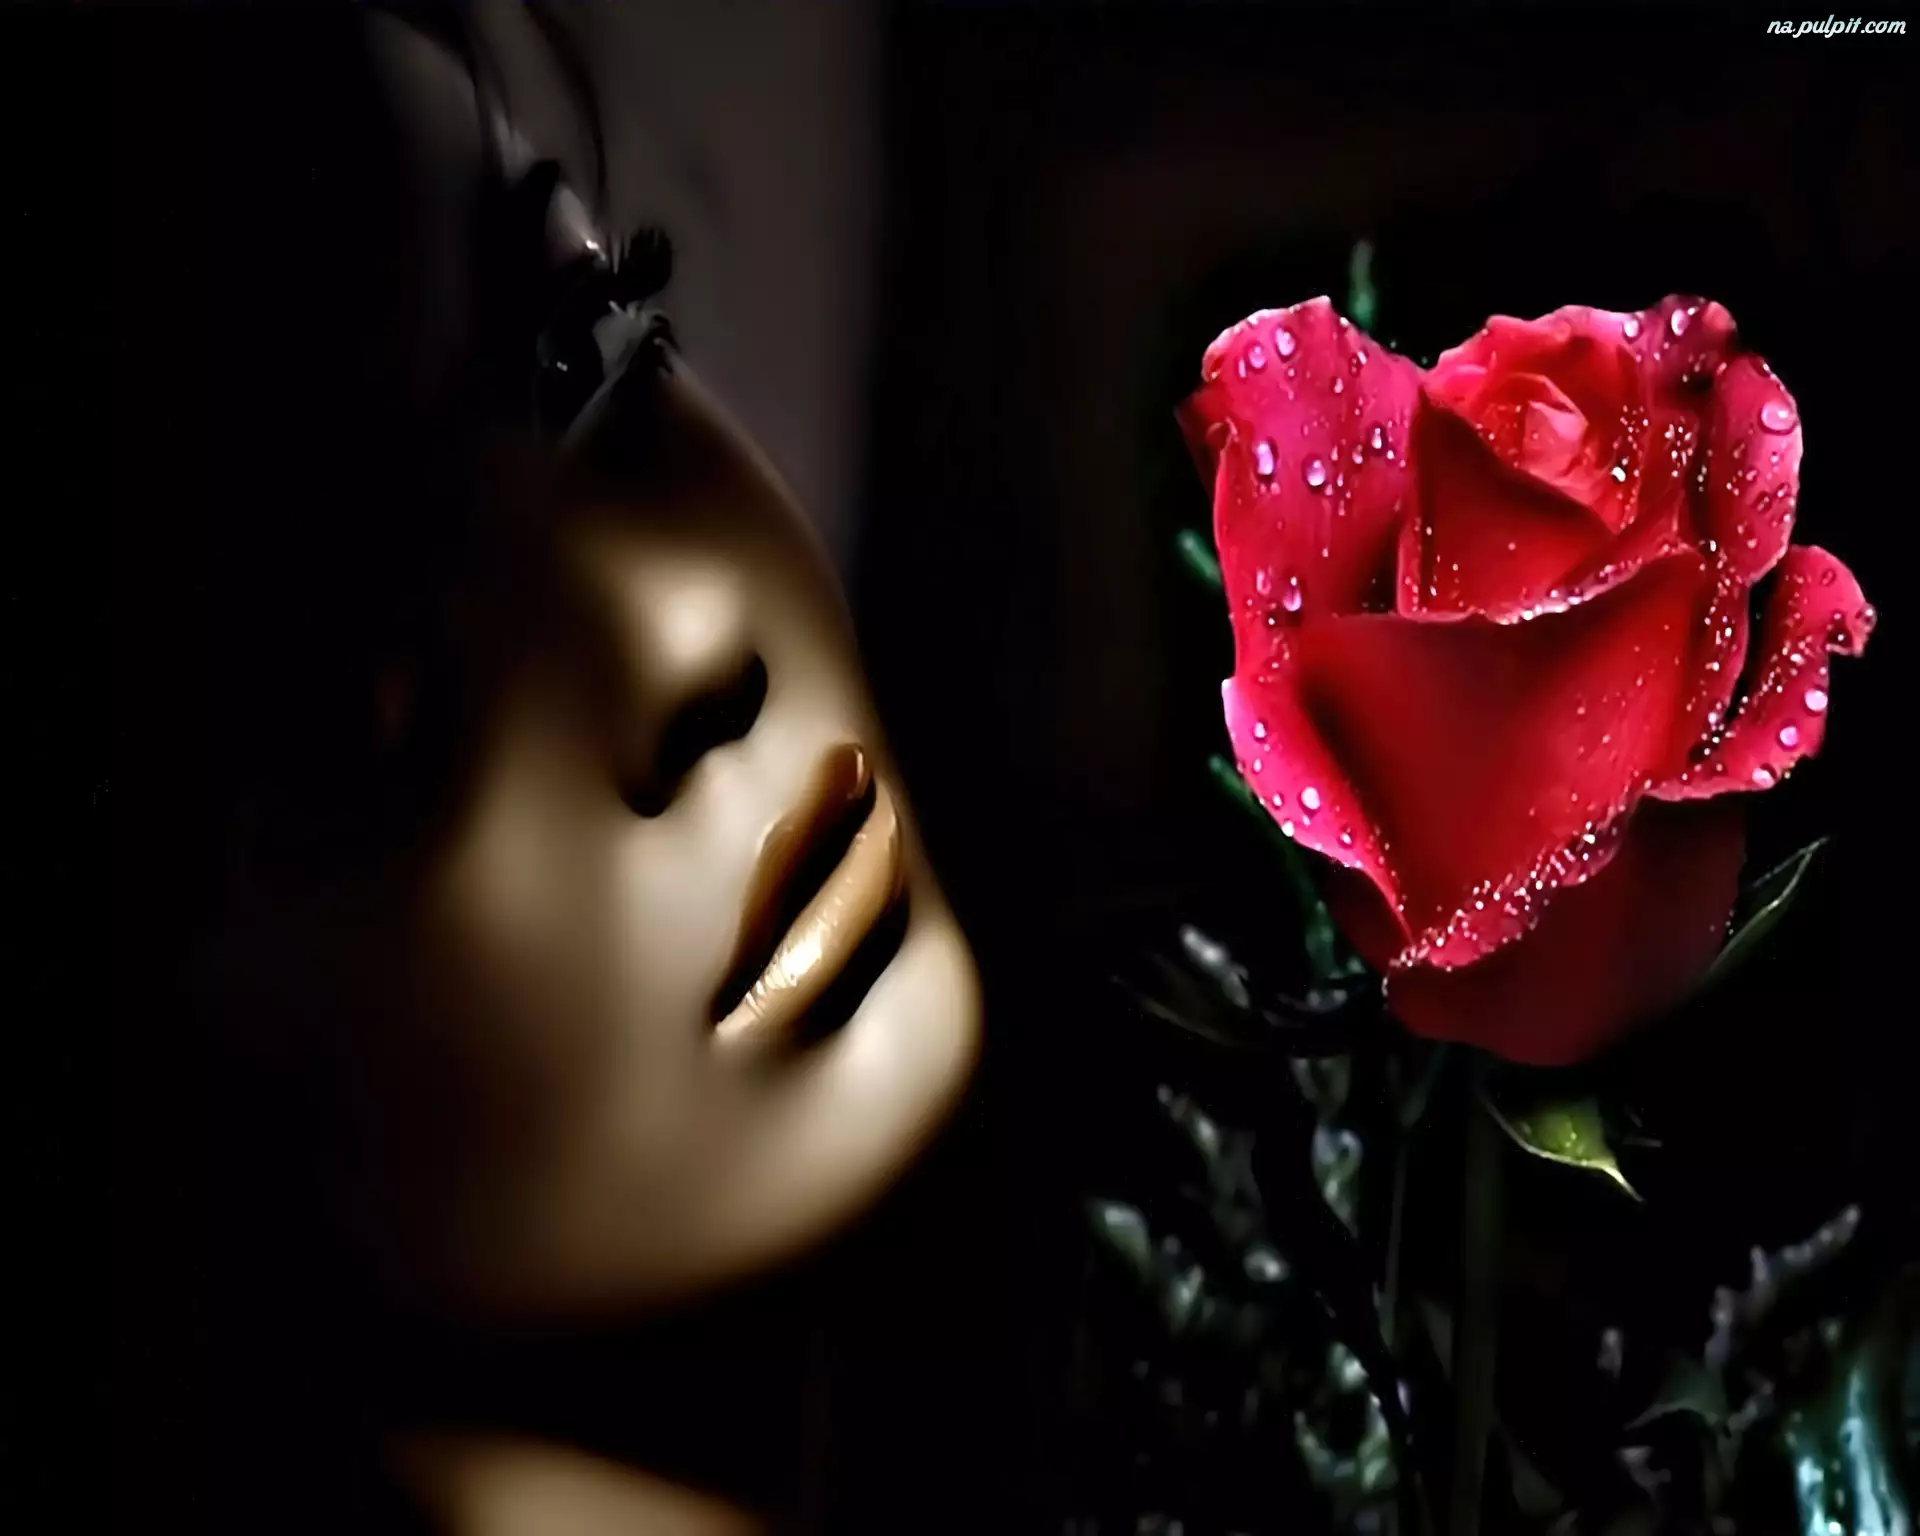 Róża, Kobieta, Twarz